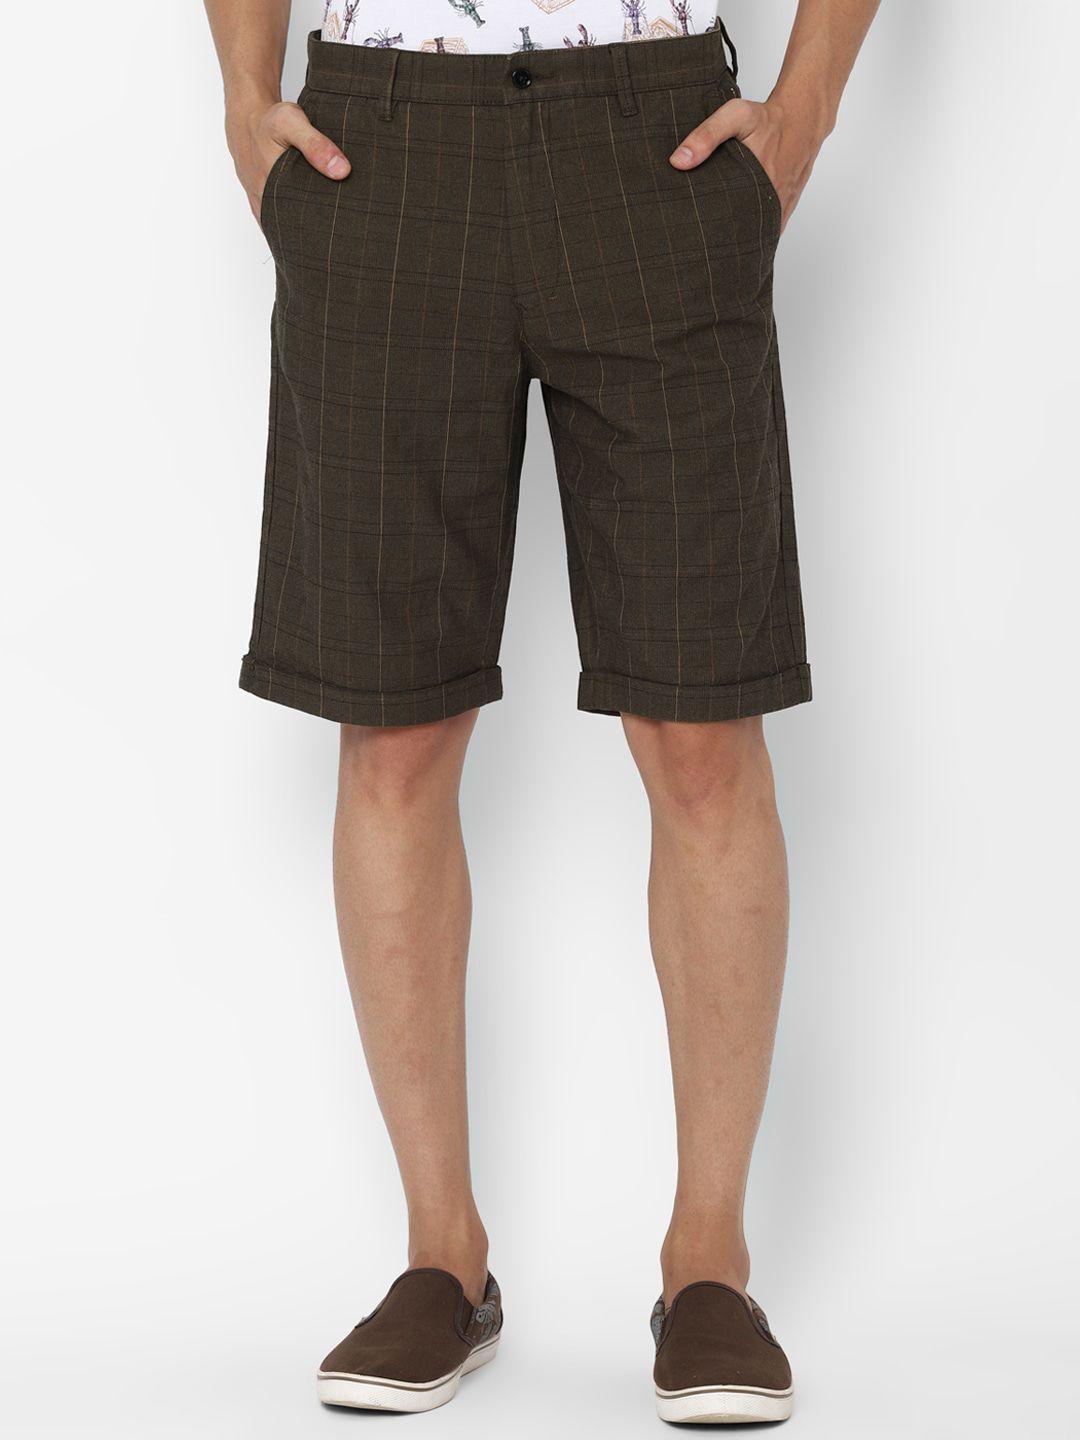 simon-carter-london-men-olive-green-checked-slim-fit-regular-shorts